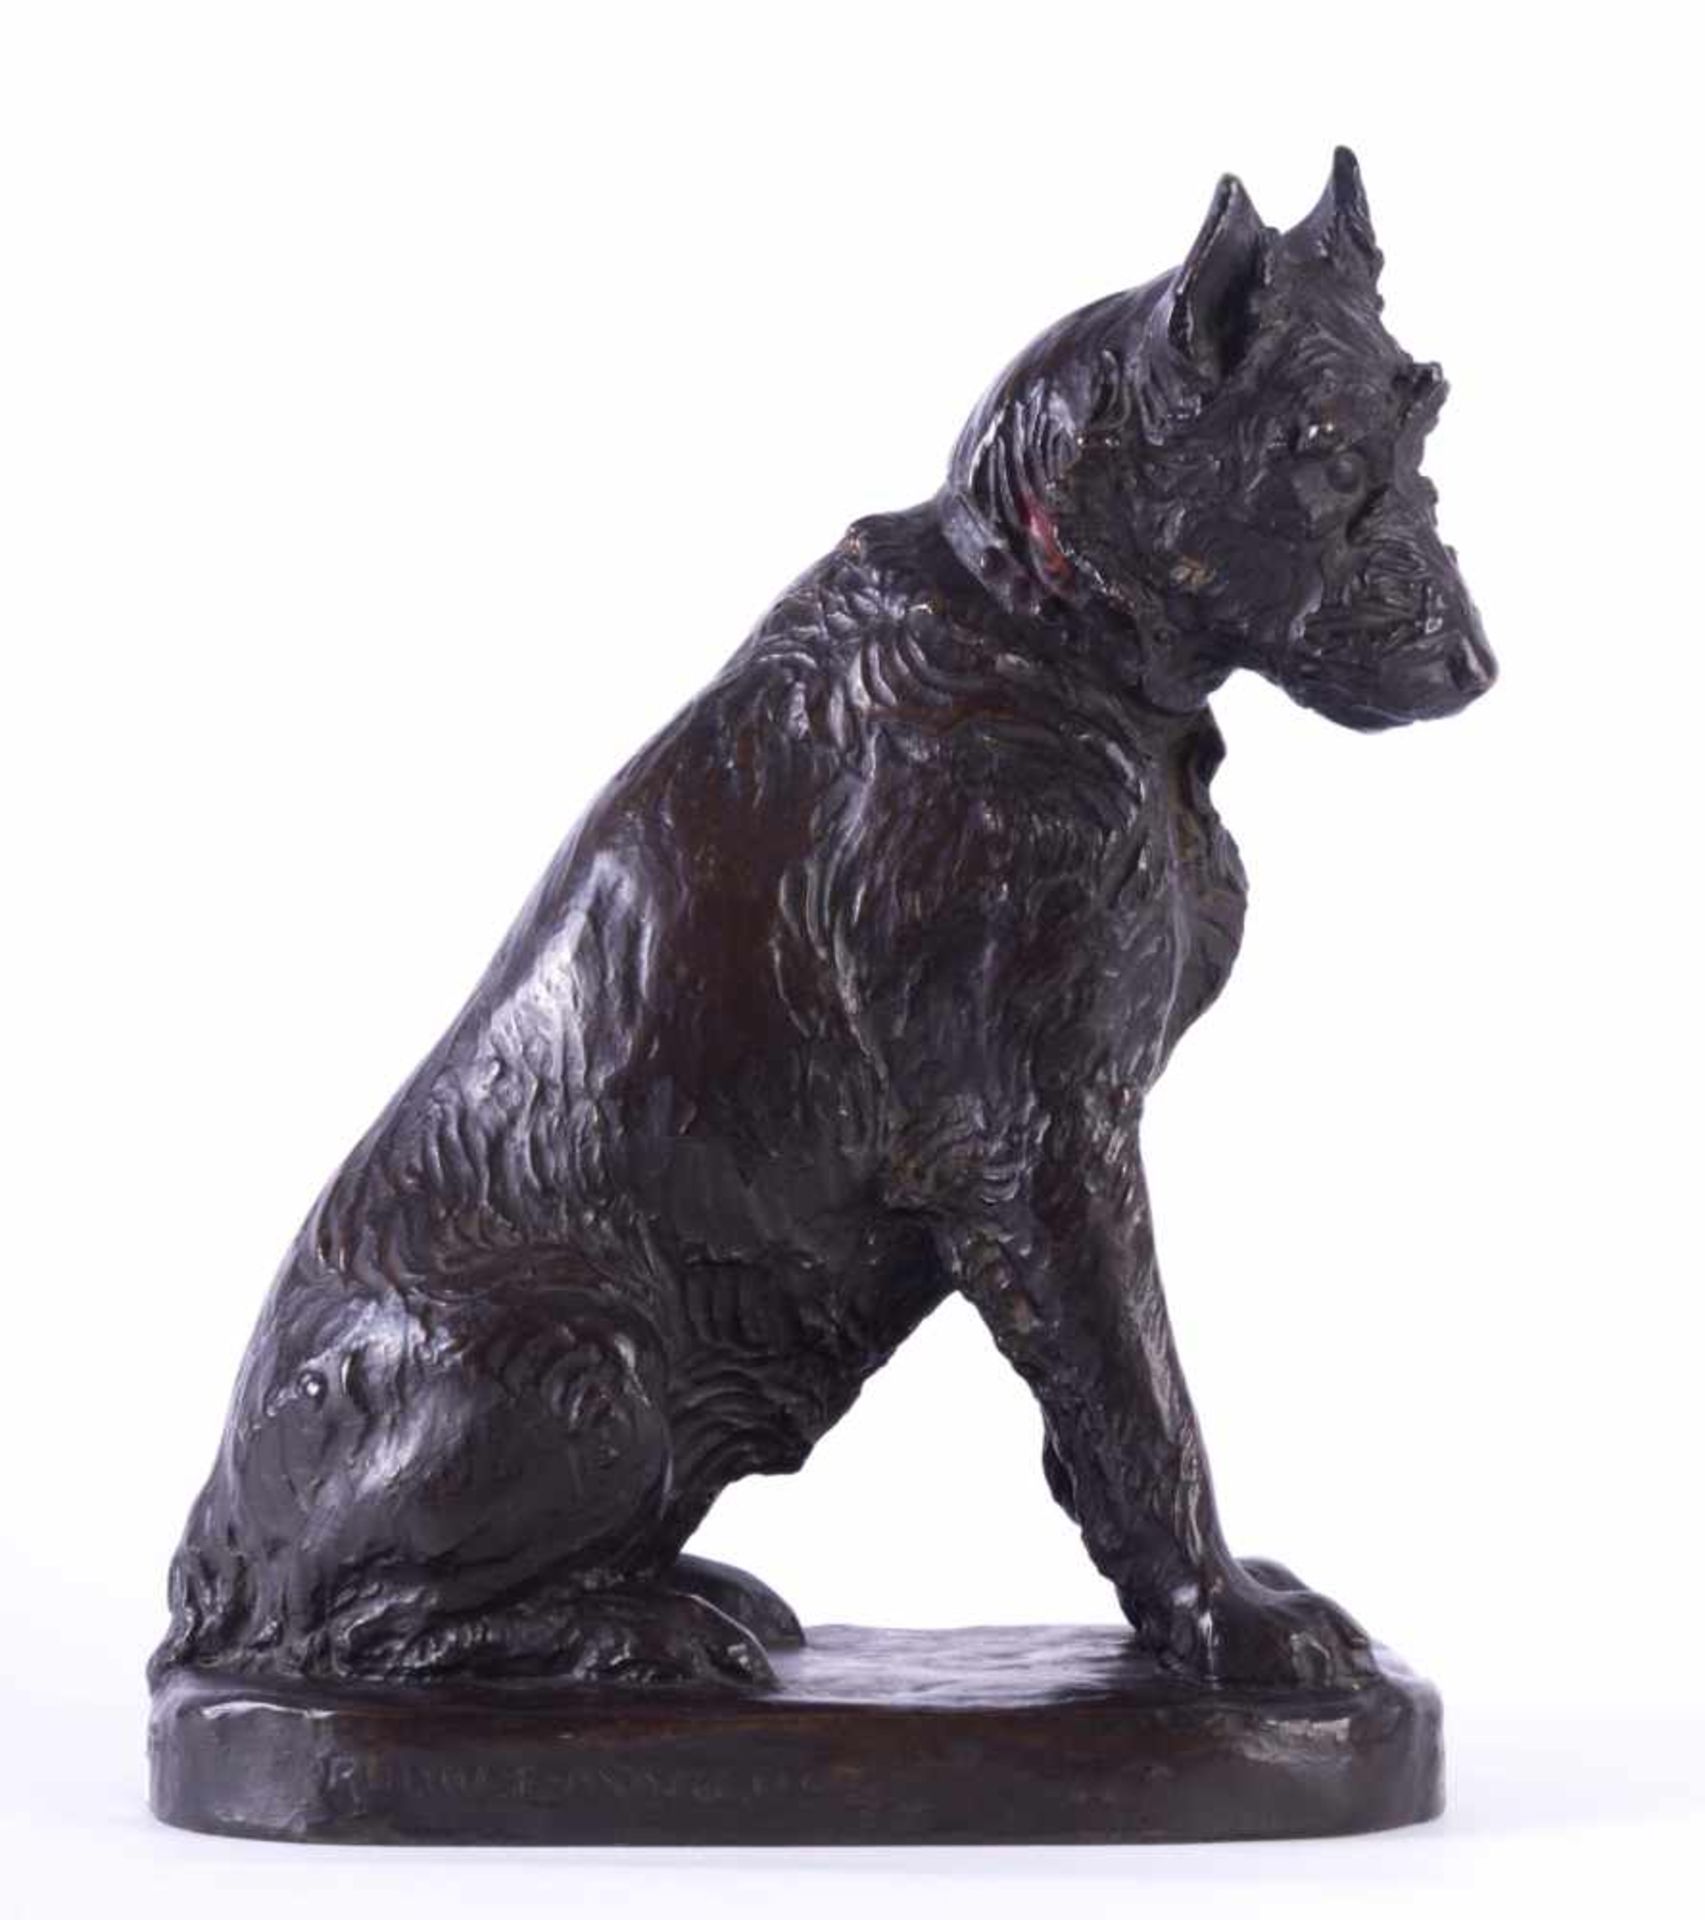 Rudolf MARCUSE (1878-c.1930/40)"Terrier"Skulptur-Volumen, Bronze, H: 31,5 cmRudolf MARCUSE (1878-c.